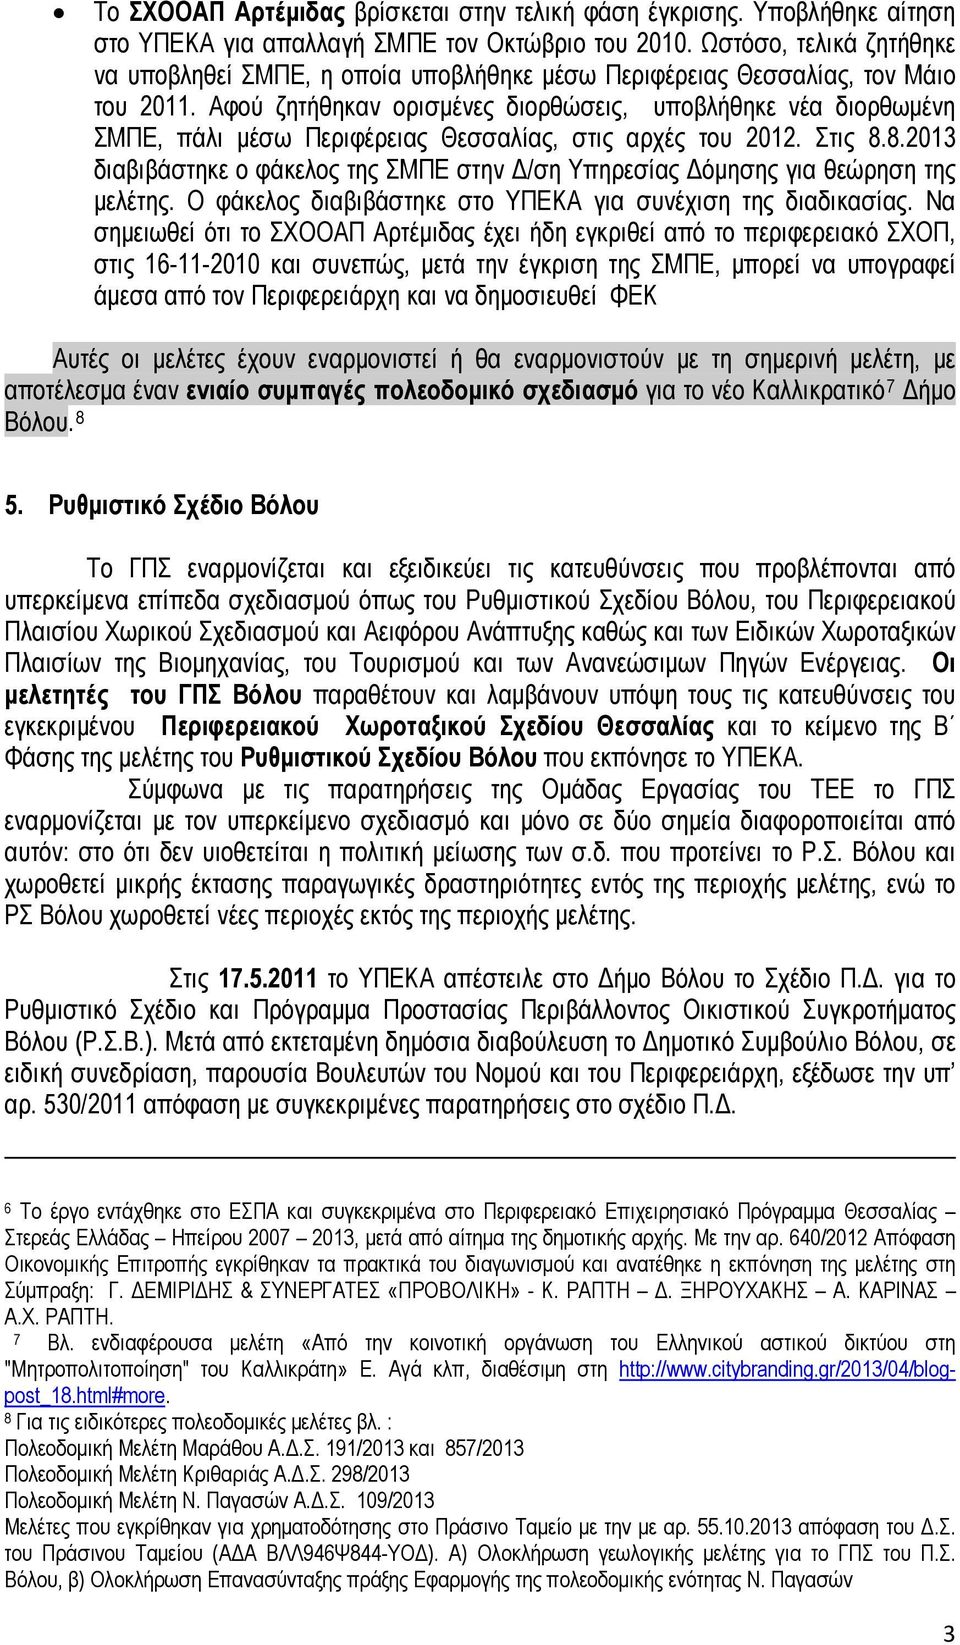 Αφού ζητήθηκαν ορισμένες διορθώσεις, υποβλήθηκε νέα διορθωμένη ΣΜΠΕ, πάλι μέσω Περιφέρειας Θεσσαλίας, στις αρχές του 2012. Στις 8.